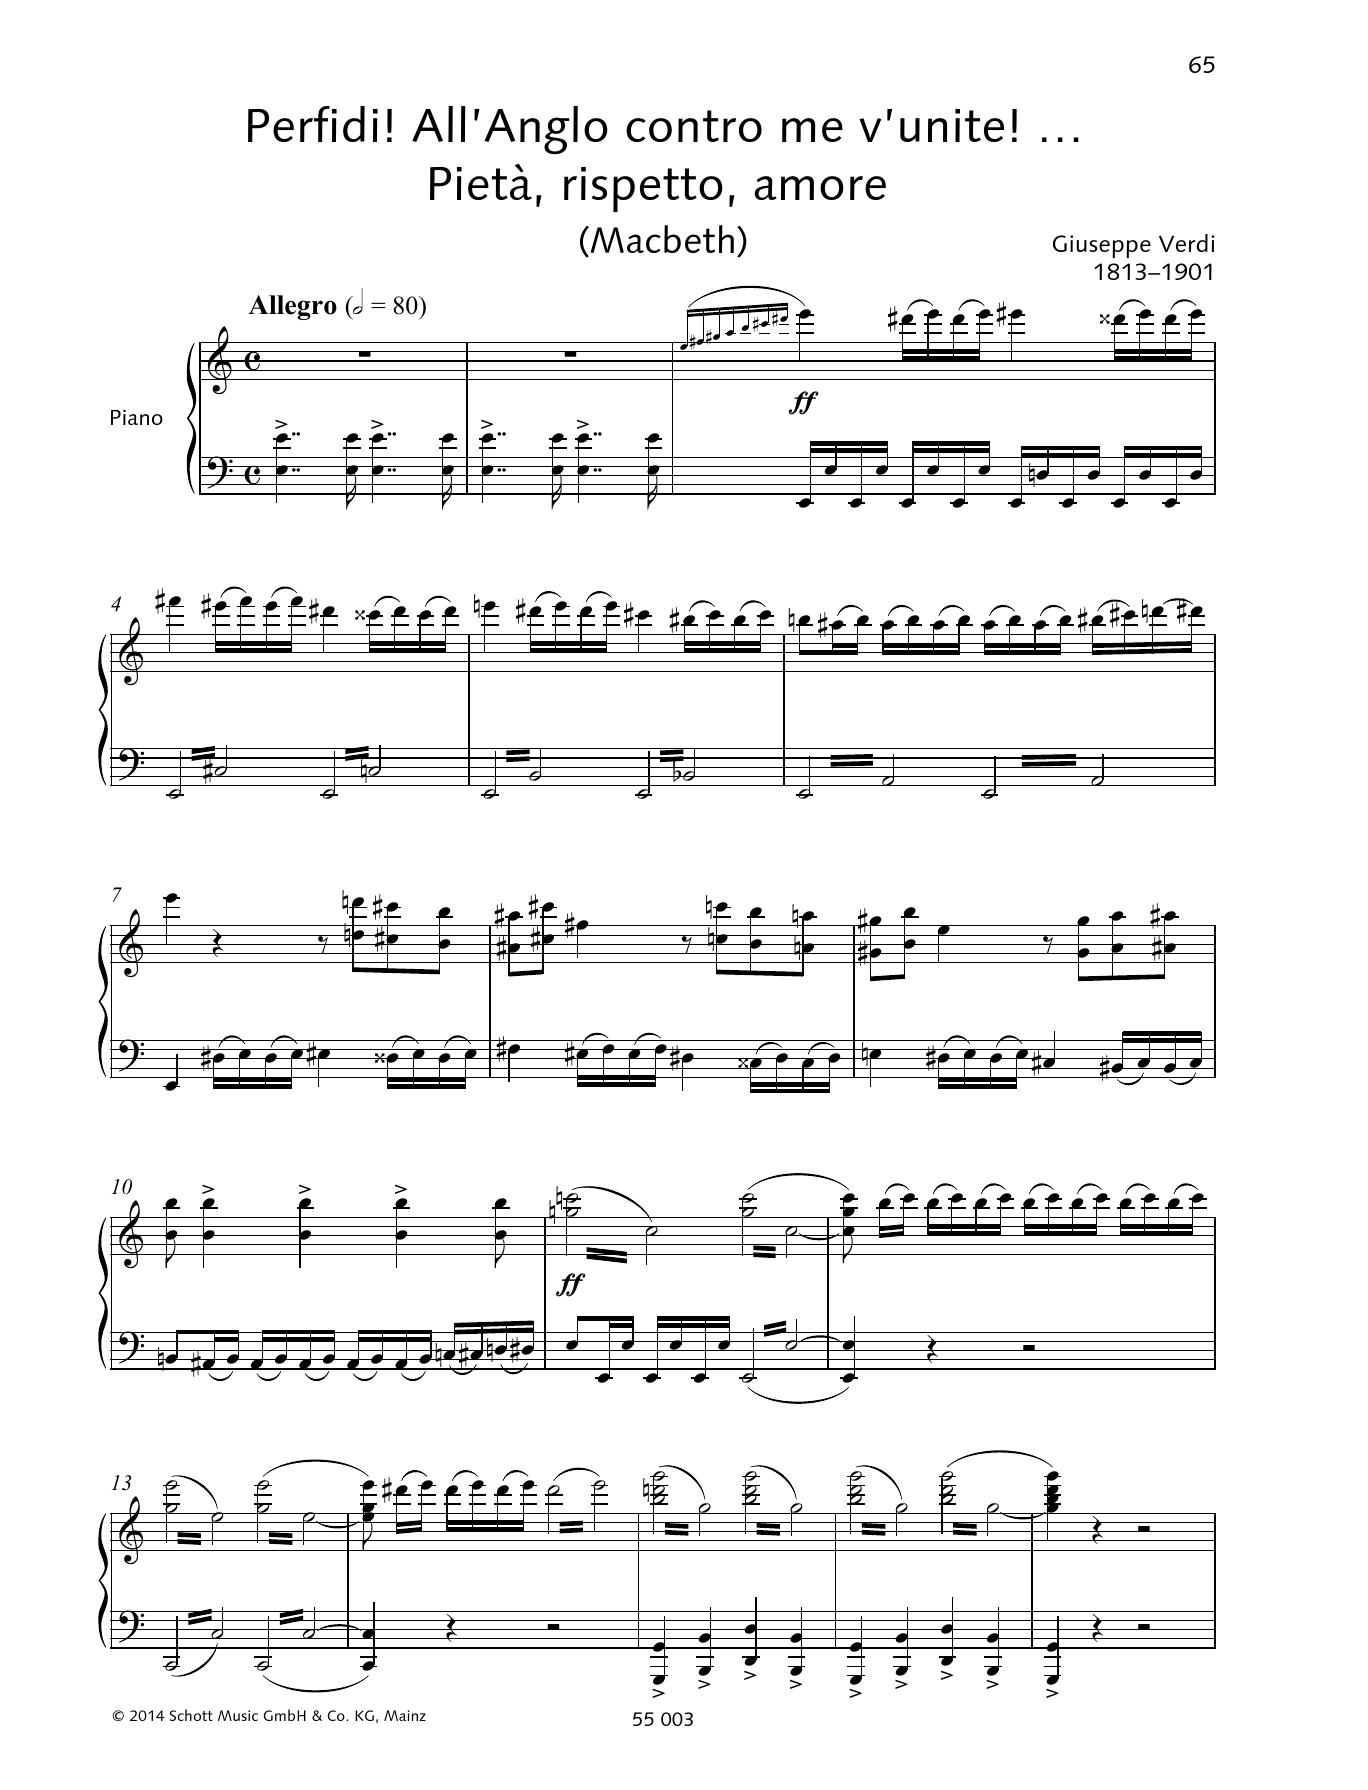 Giuseppe Verdi Perfidi! All'Anglo contro me v'unite!... Pietà, rispetto, amore Sheet Music Notes & Chords for Piano & Vocal - Download or Print PDF